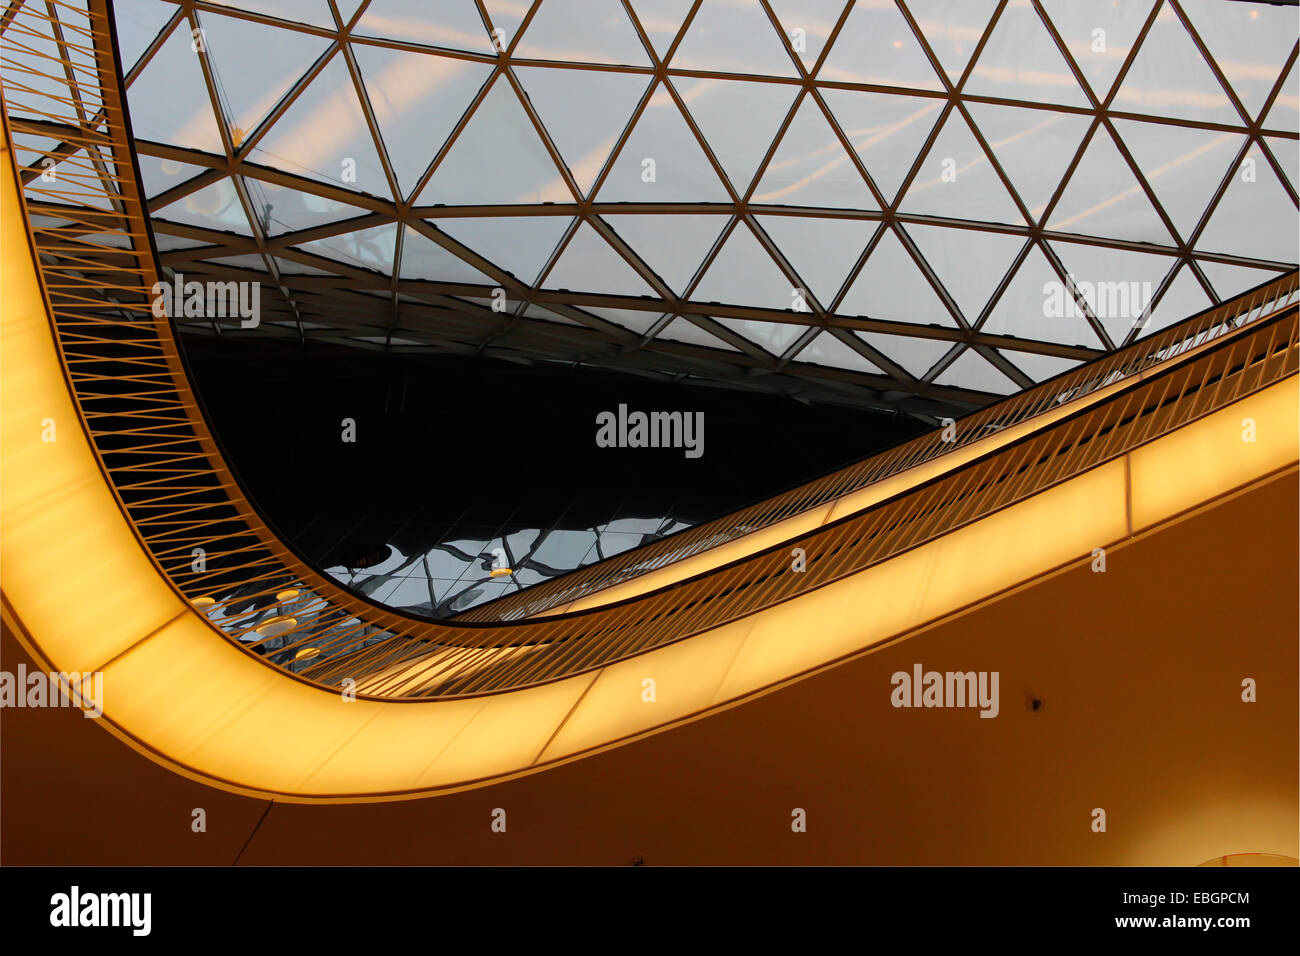 Hintergrund der abstrakten High-Tech-Architektur mit transparenten Dach Stockfoto